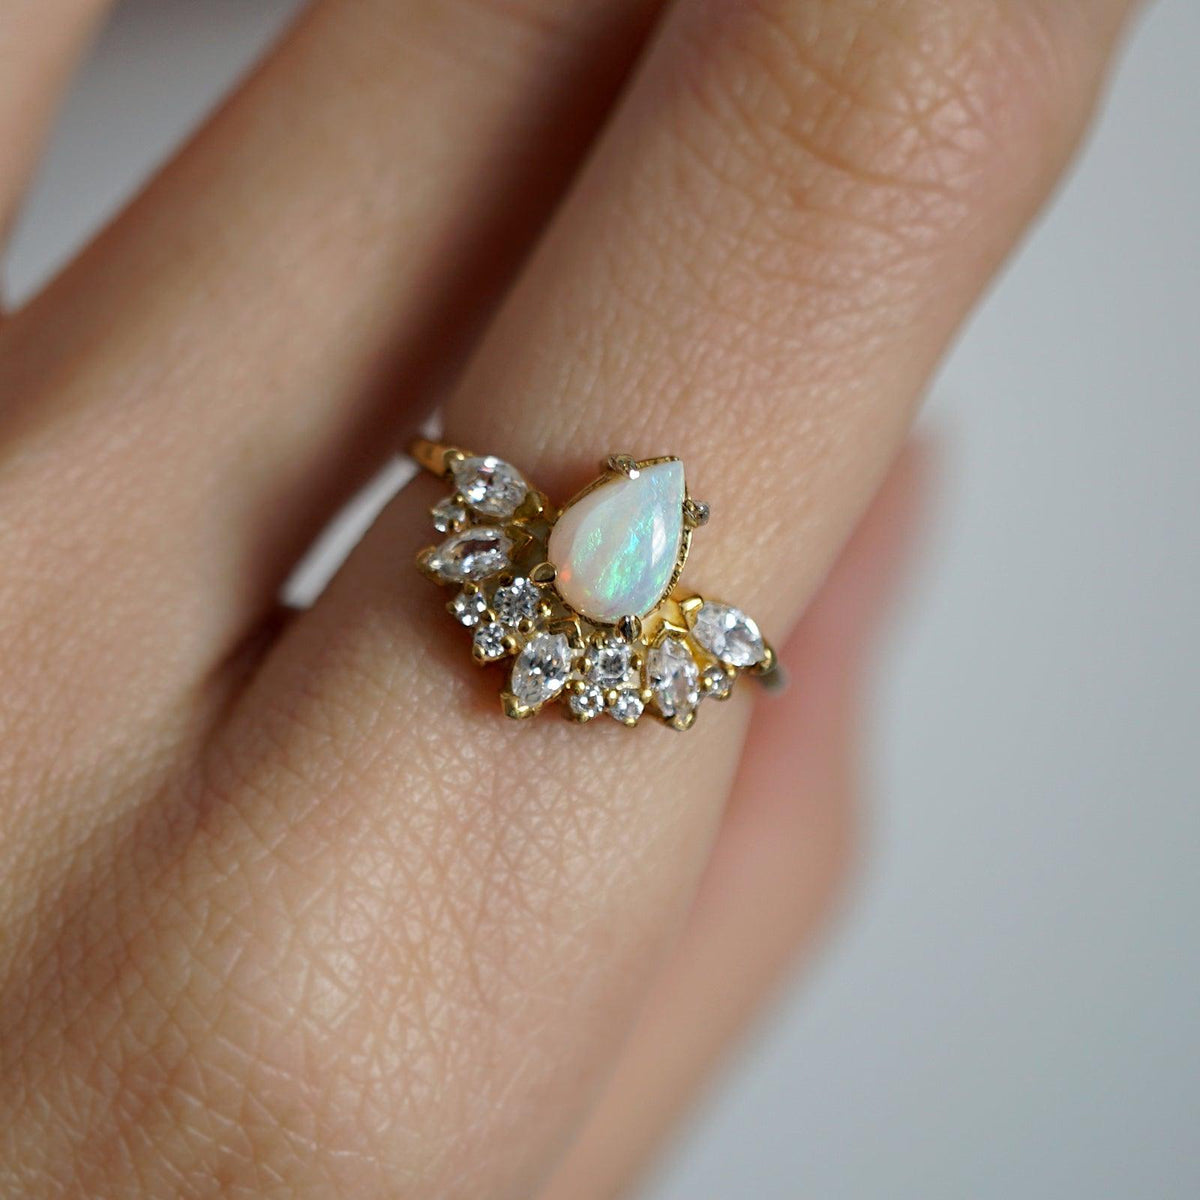 Parisian Opal Ring